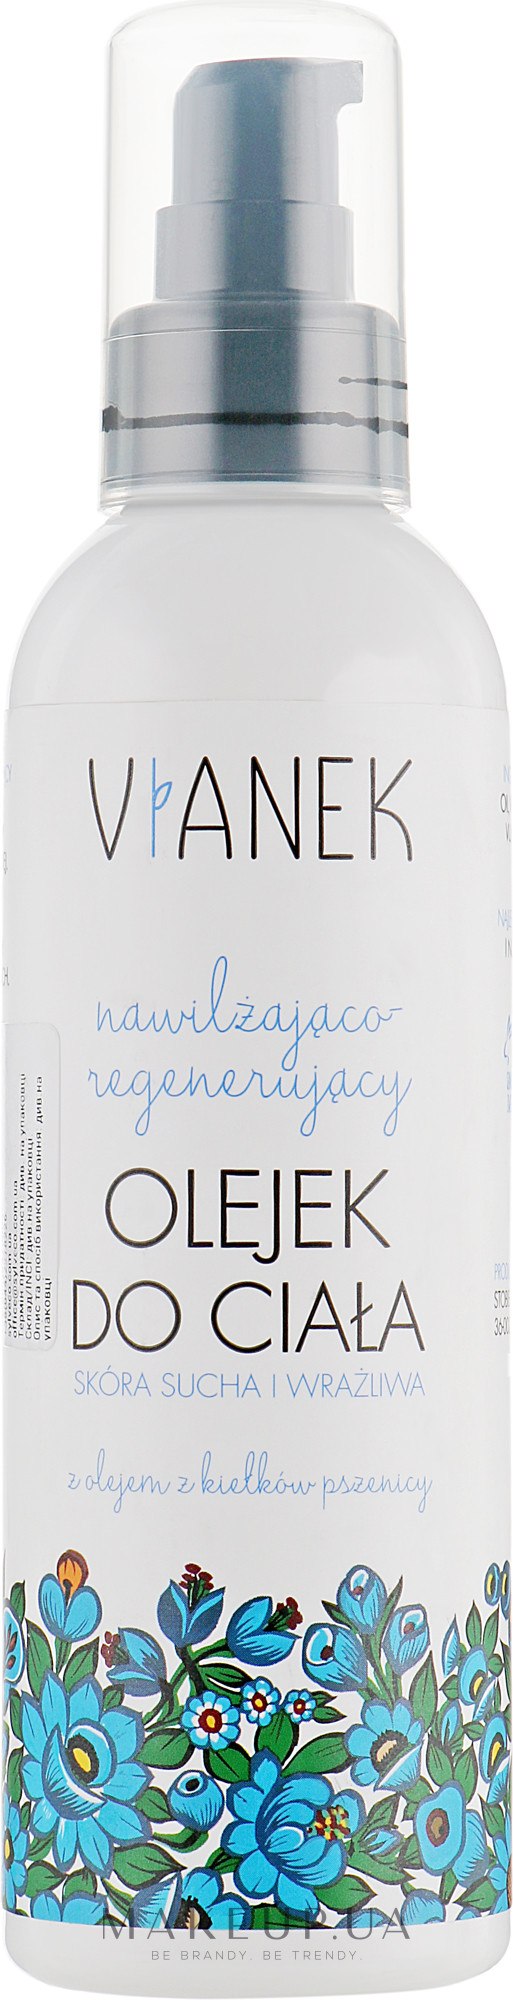 Зволожувальна і регенерувальна оліядля тіла - Vianek — фото 200ml